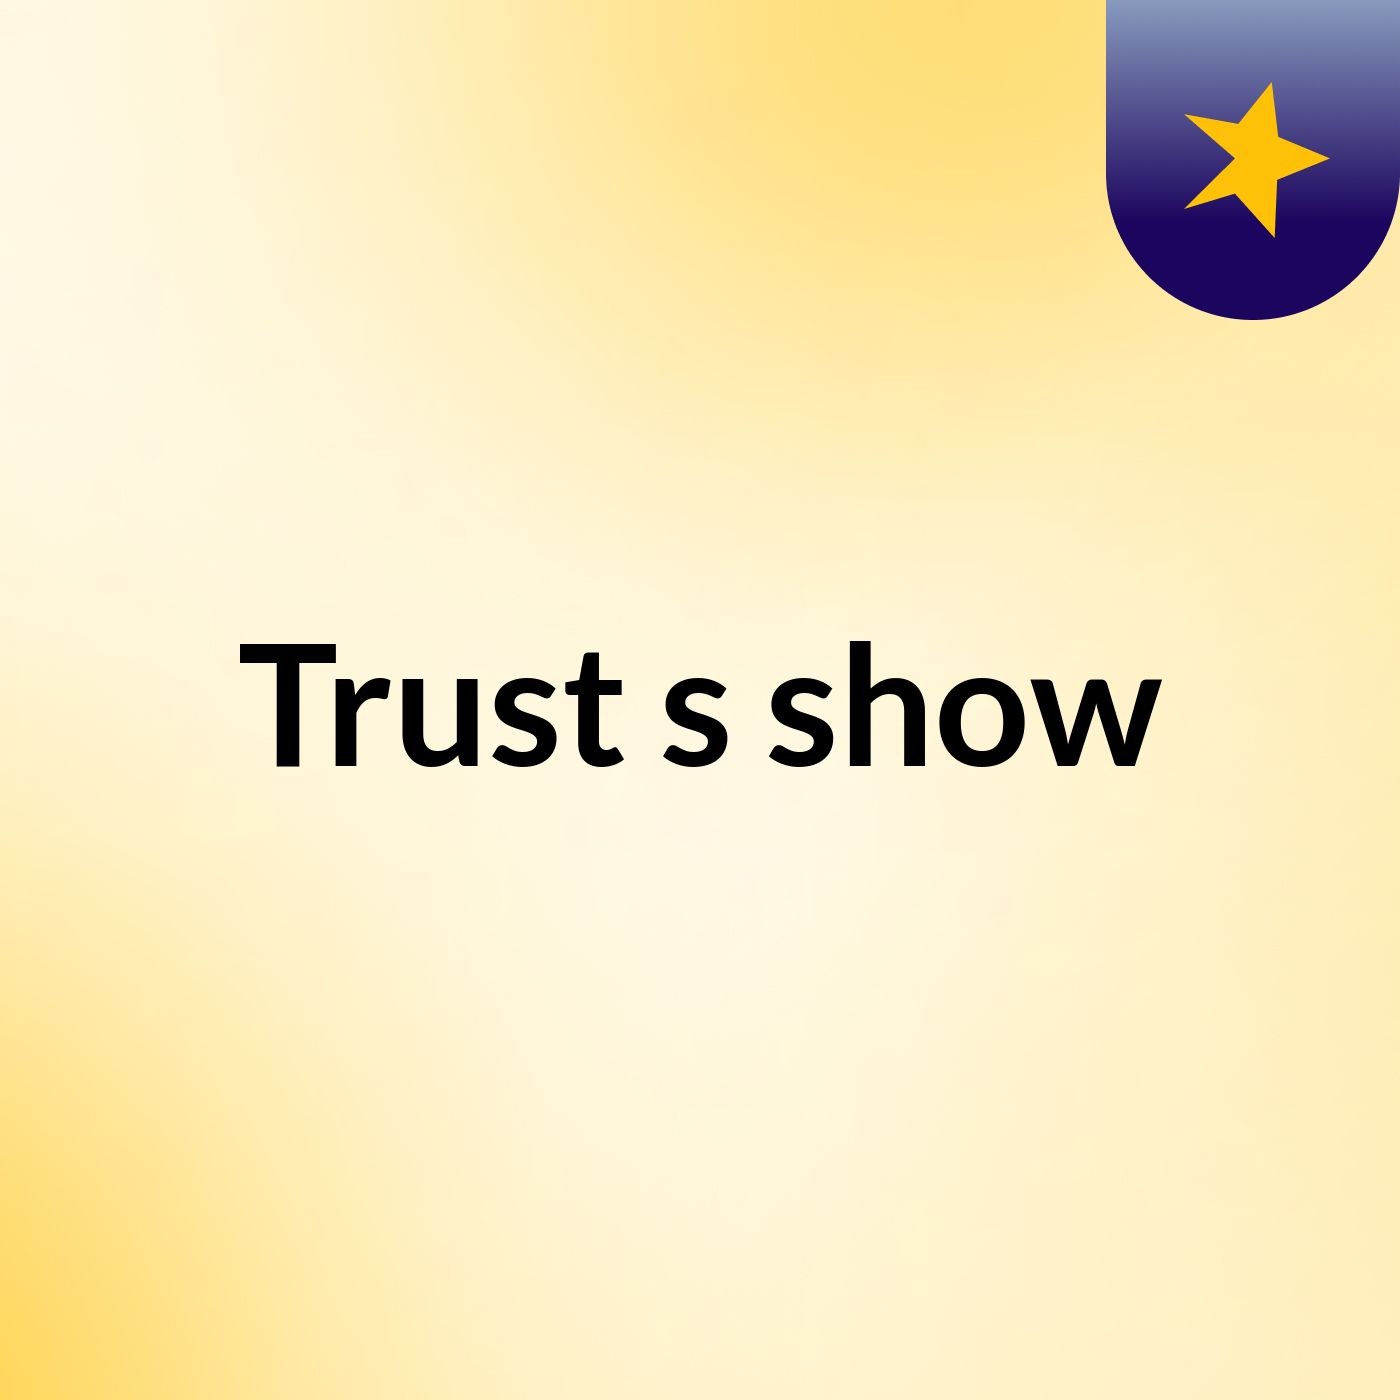 Trust's show